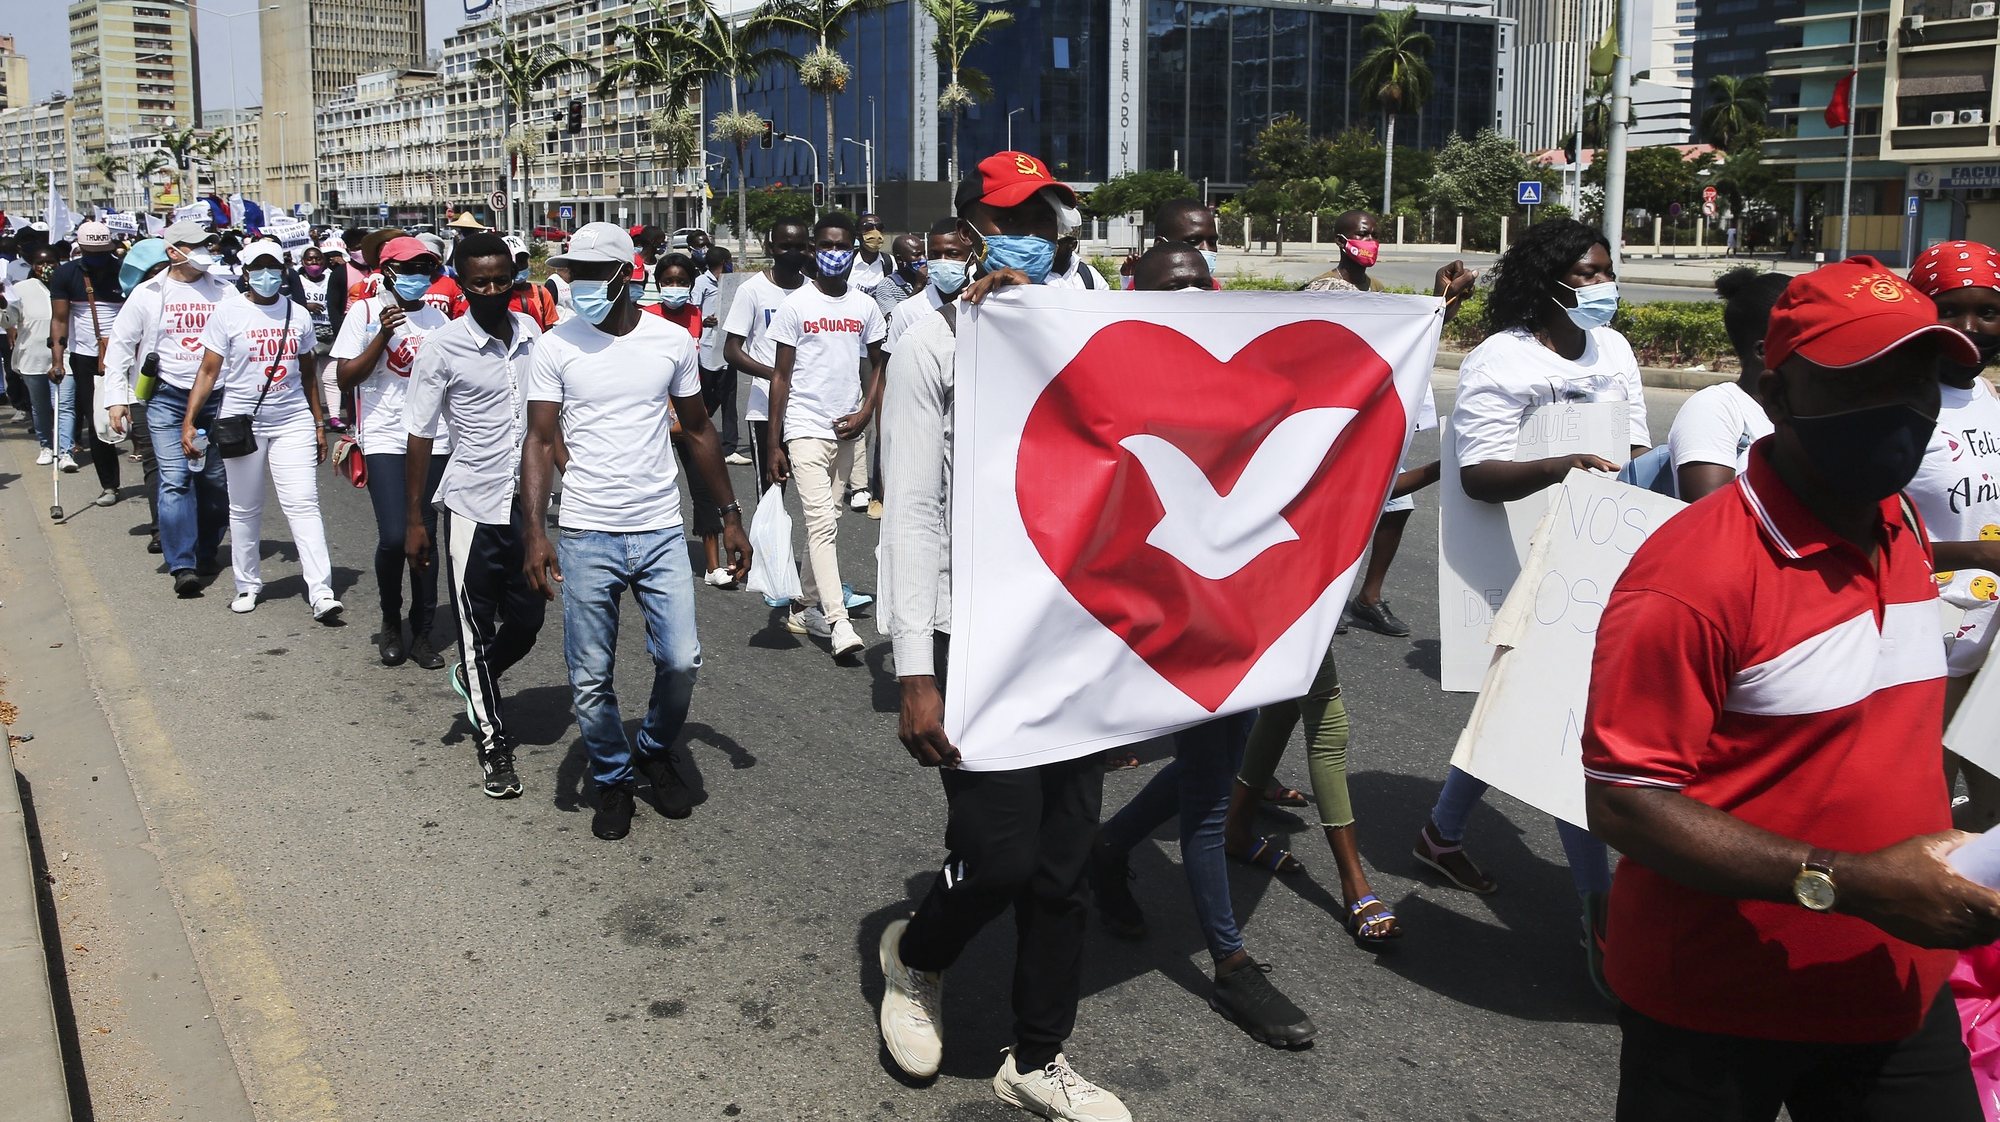 Membros da Igreja Universal do Reino de Deus (IURD) durante a marcha pacífica nas ruas de Luanda, Angola, 30 de janeiro de 2021. AMPE ROGÉRIO/LUSA